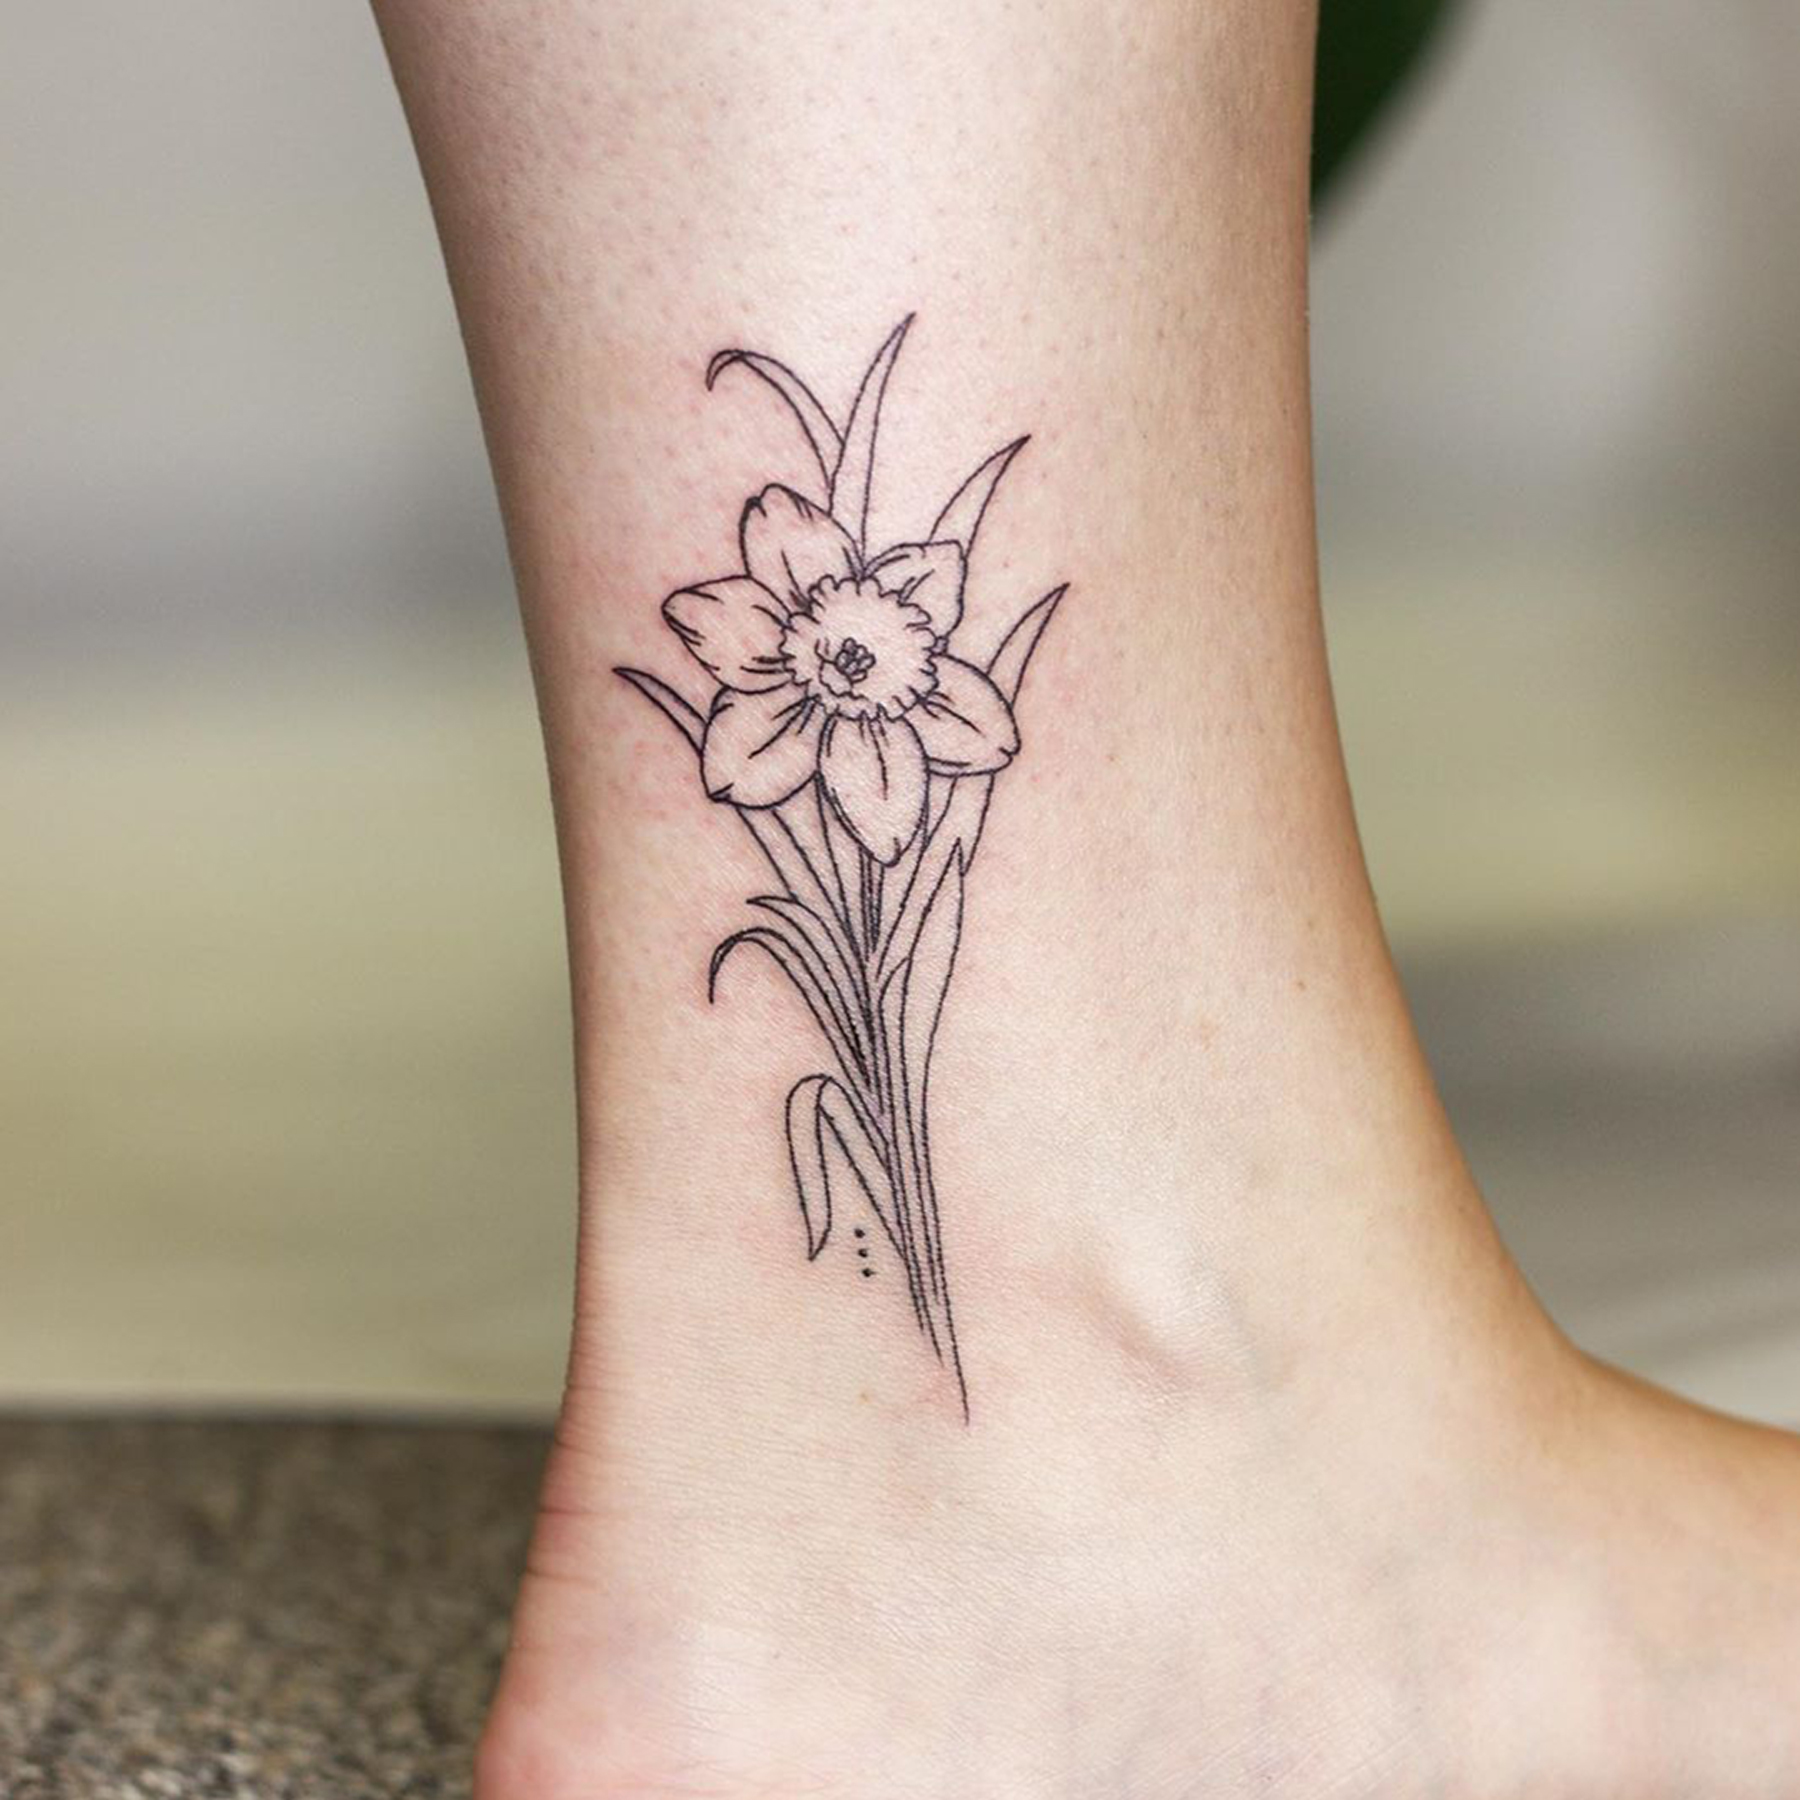 Minimalist daffodil tattoo on the ankle.